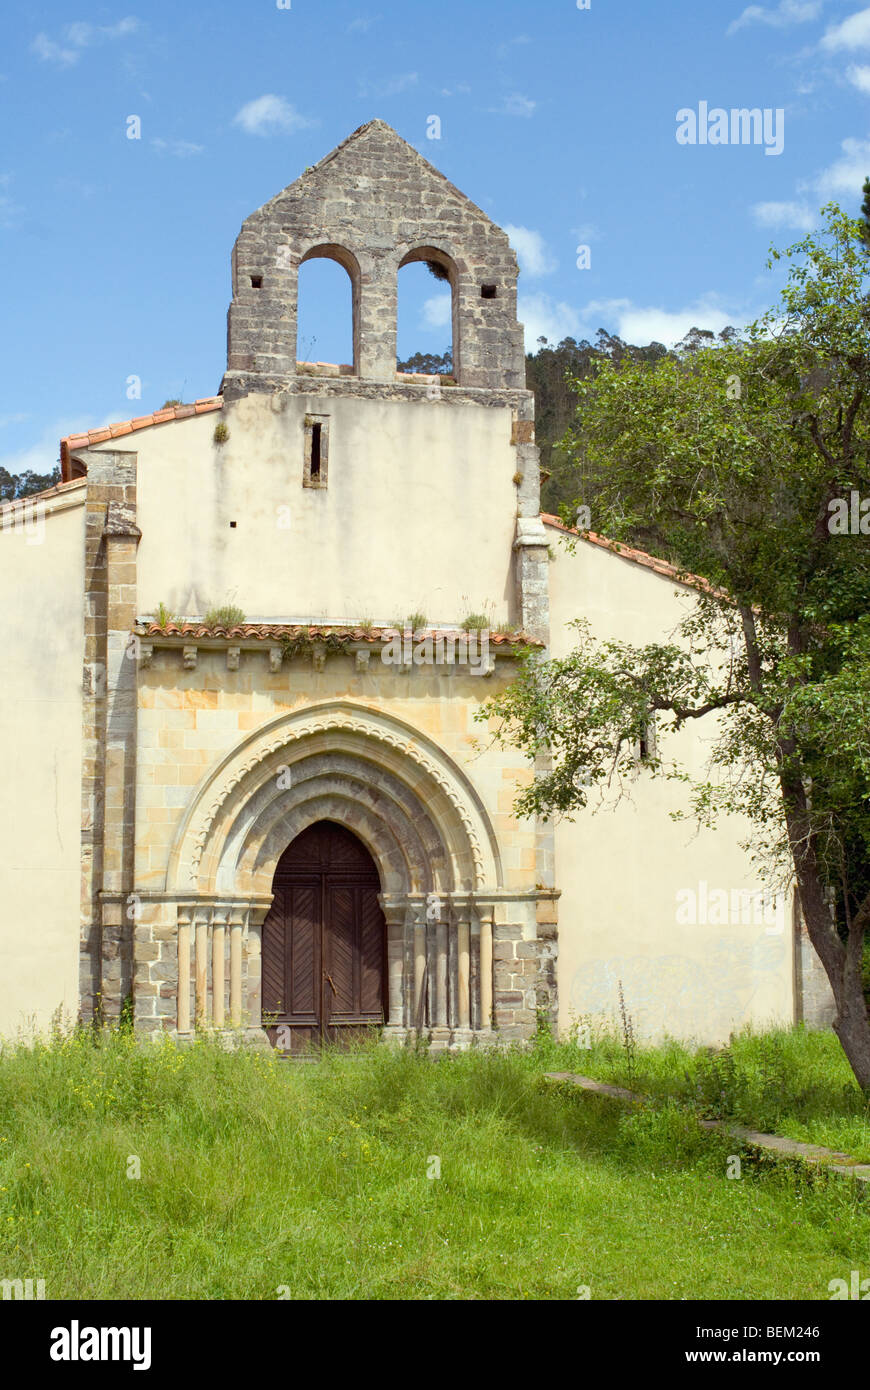 An old abandoned monastery in Asturias, Spain. La iglesia del monasterio de San Antolín de Bedón. Stock Photo